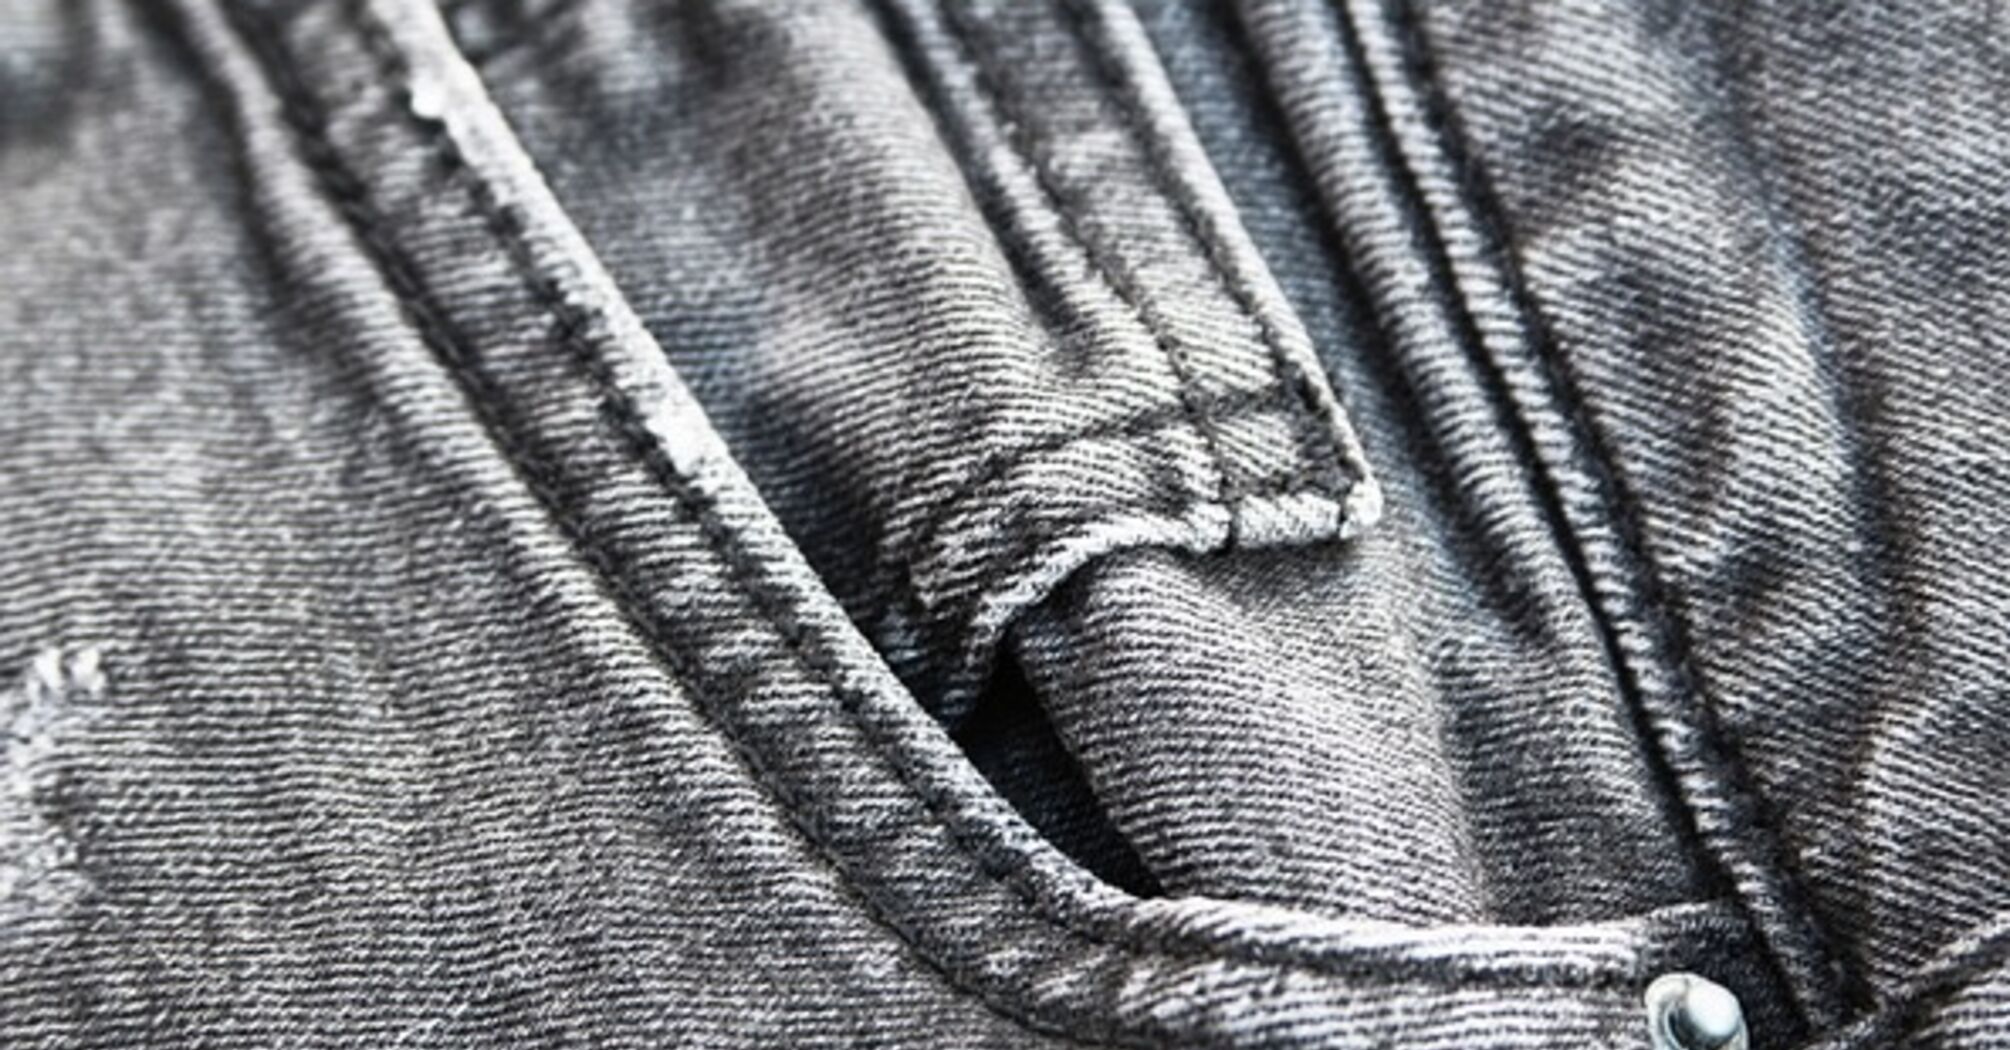 Как стирать черные джинсы, чтобы сохраняли яркий цвет: лайфхак от хозяек